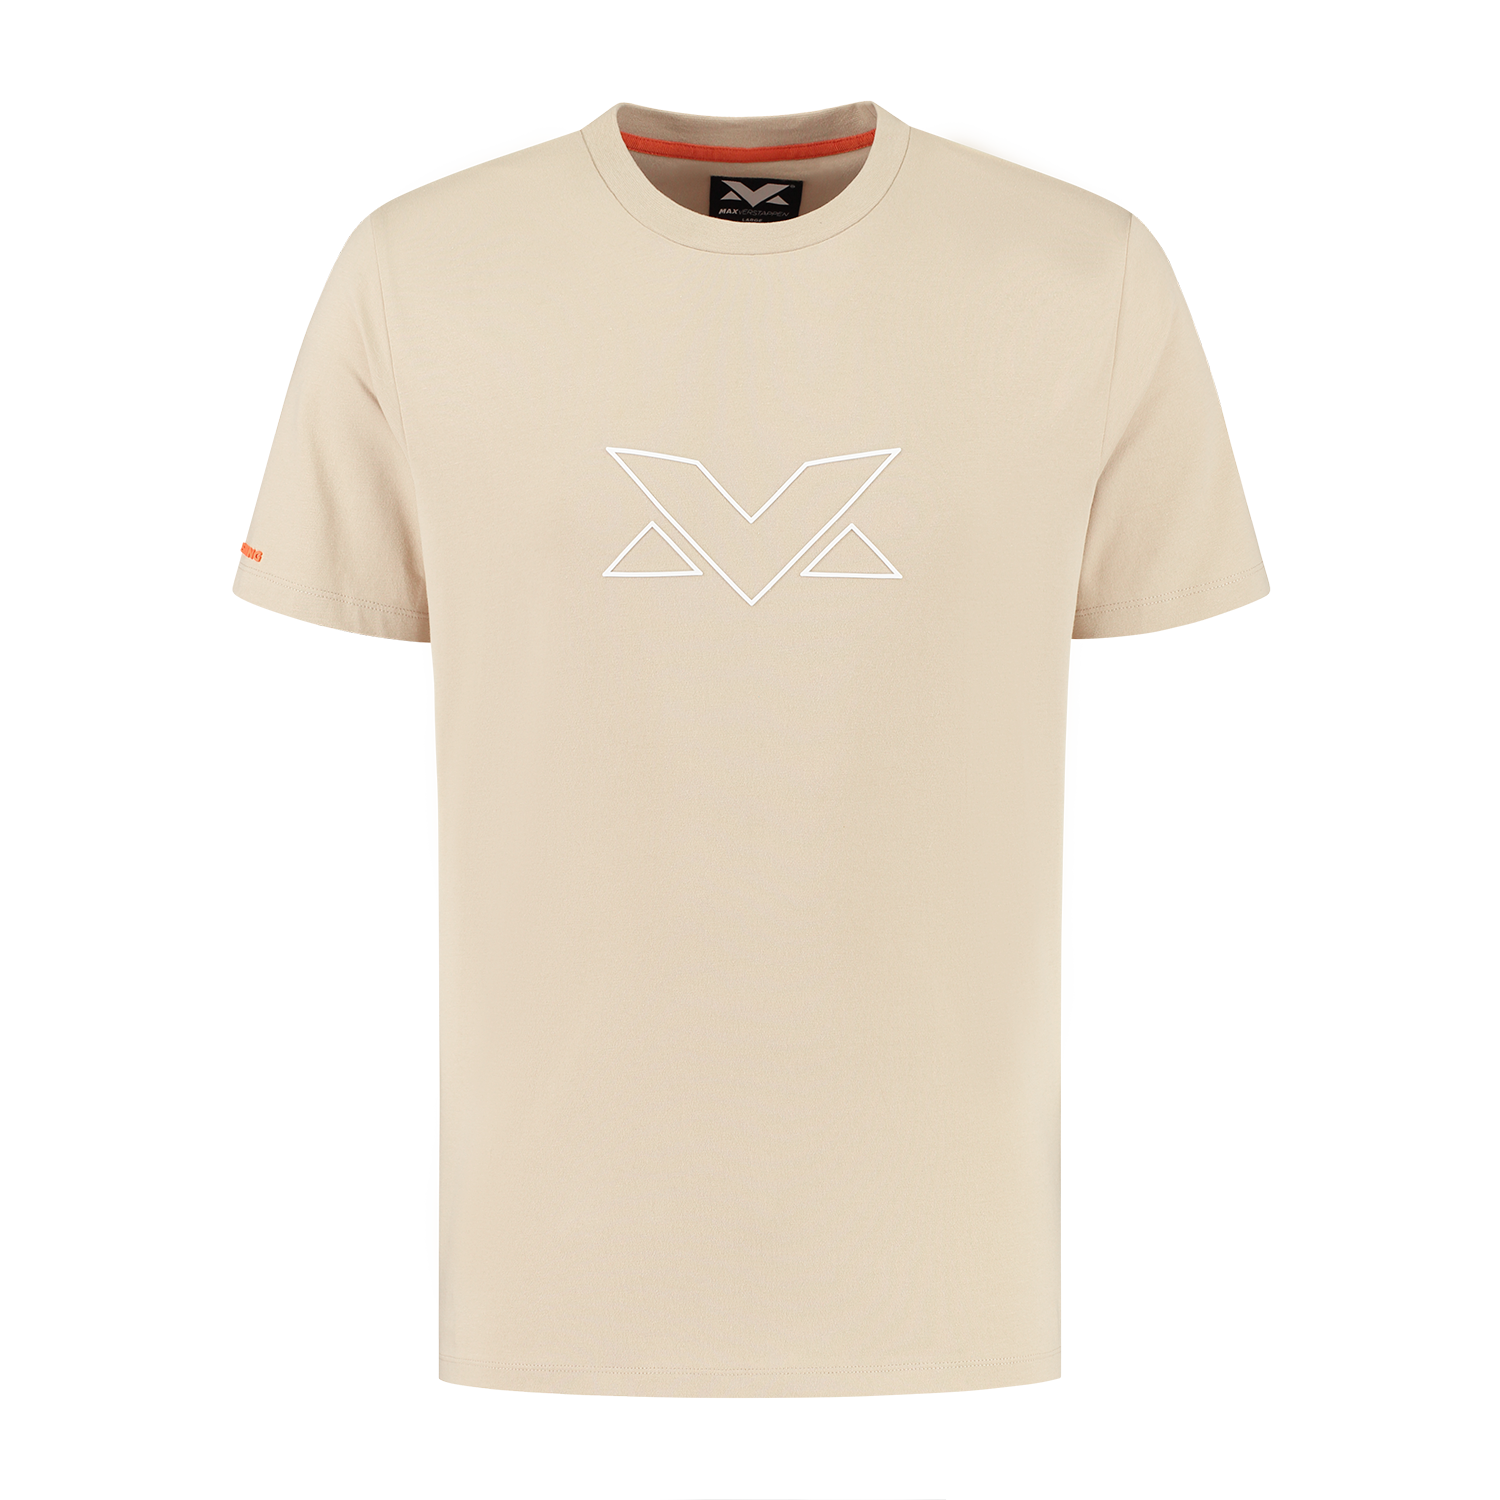 Heren - MV Logo T-shirt - Camel - XXL - Max Verstappen